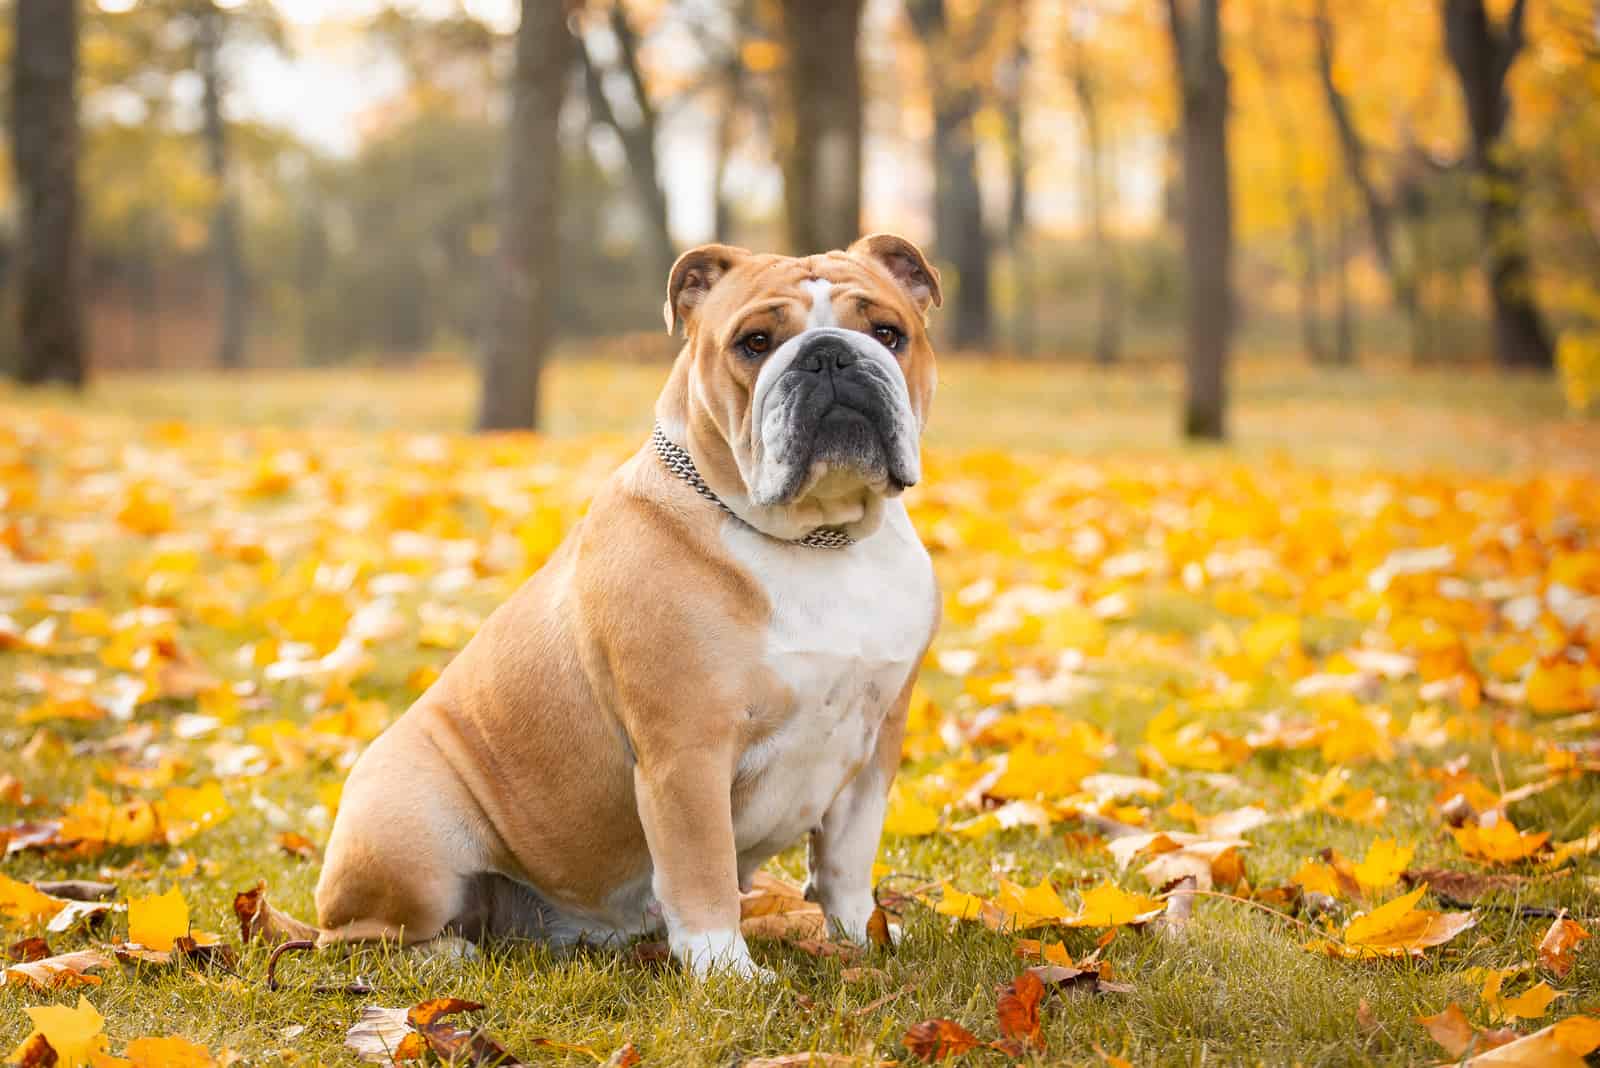 English Bulldog sitting in the park